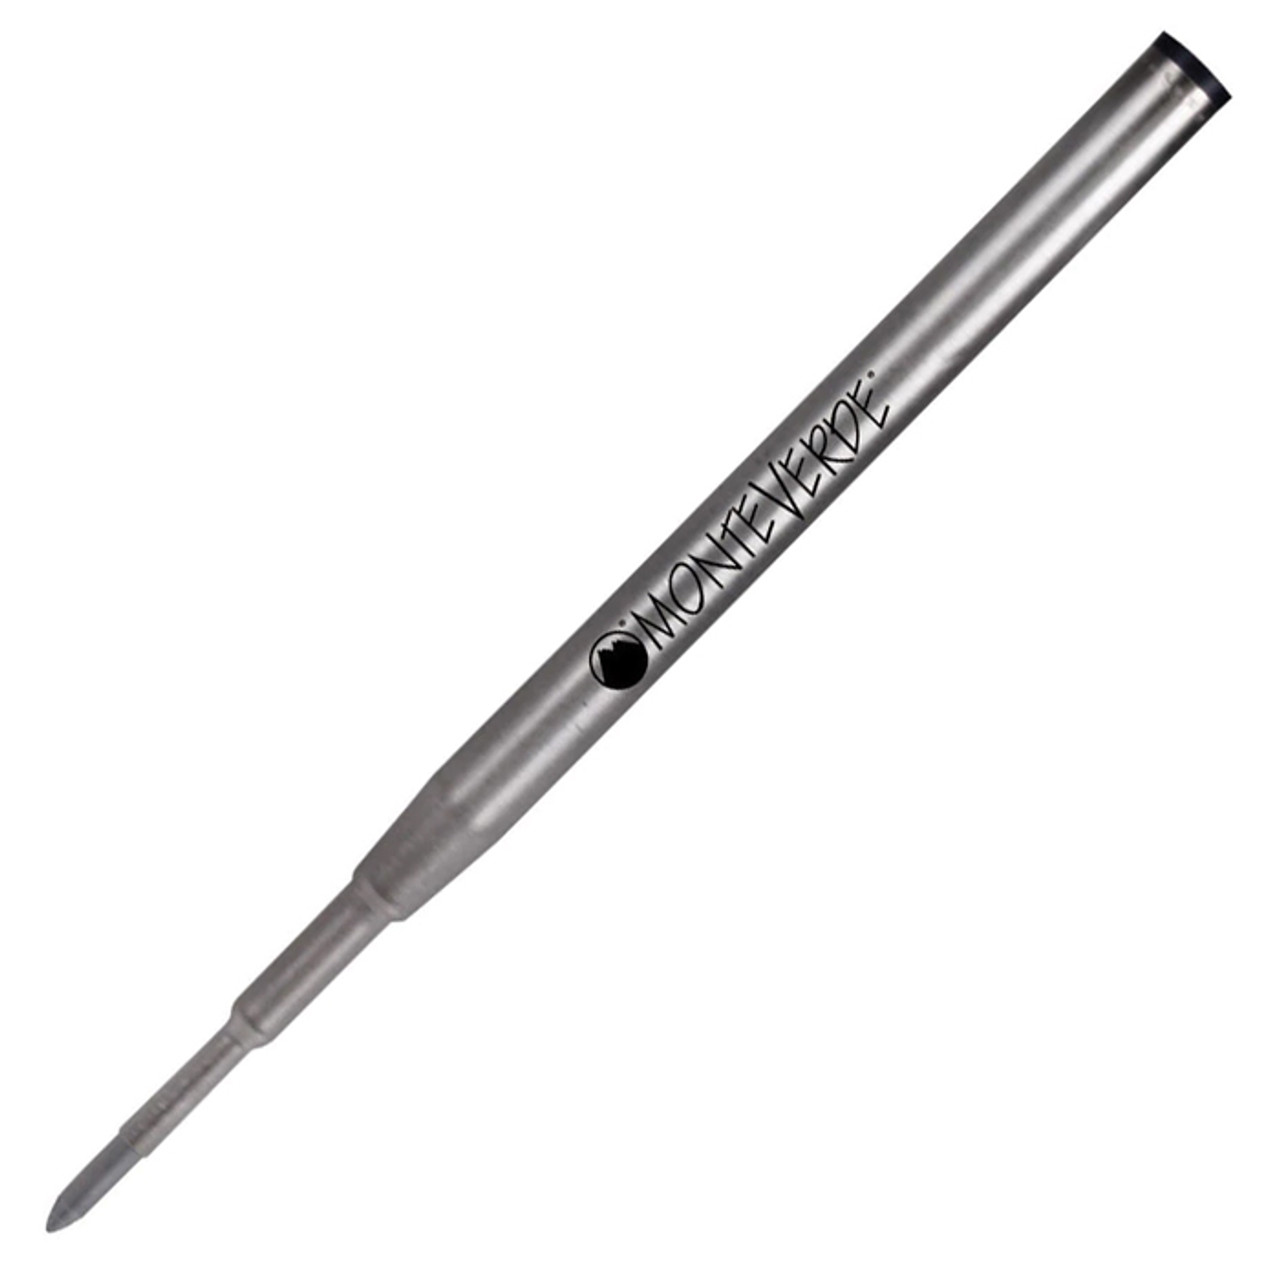 Genuine Mont Blanc Ballpoint Pen Refill - 2 Refills /Pack